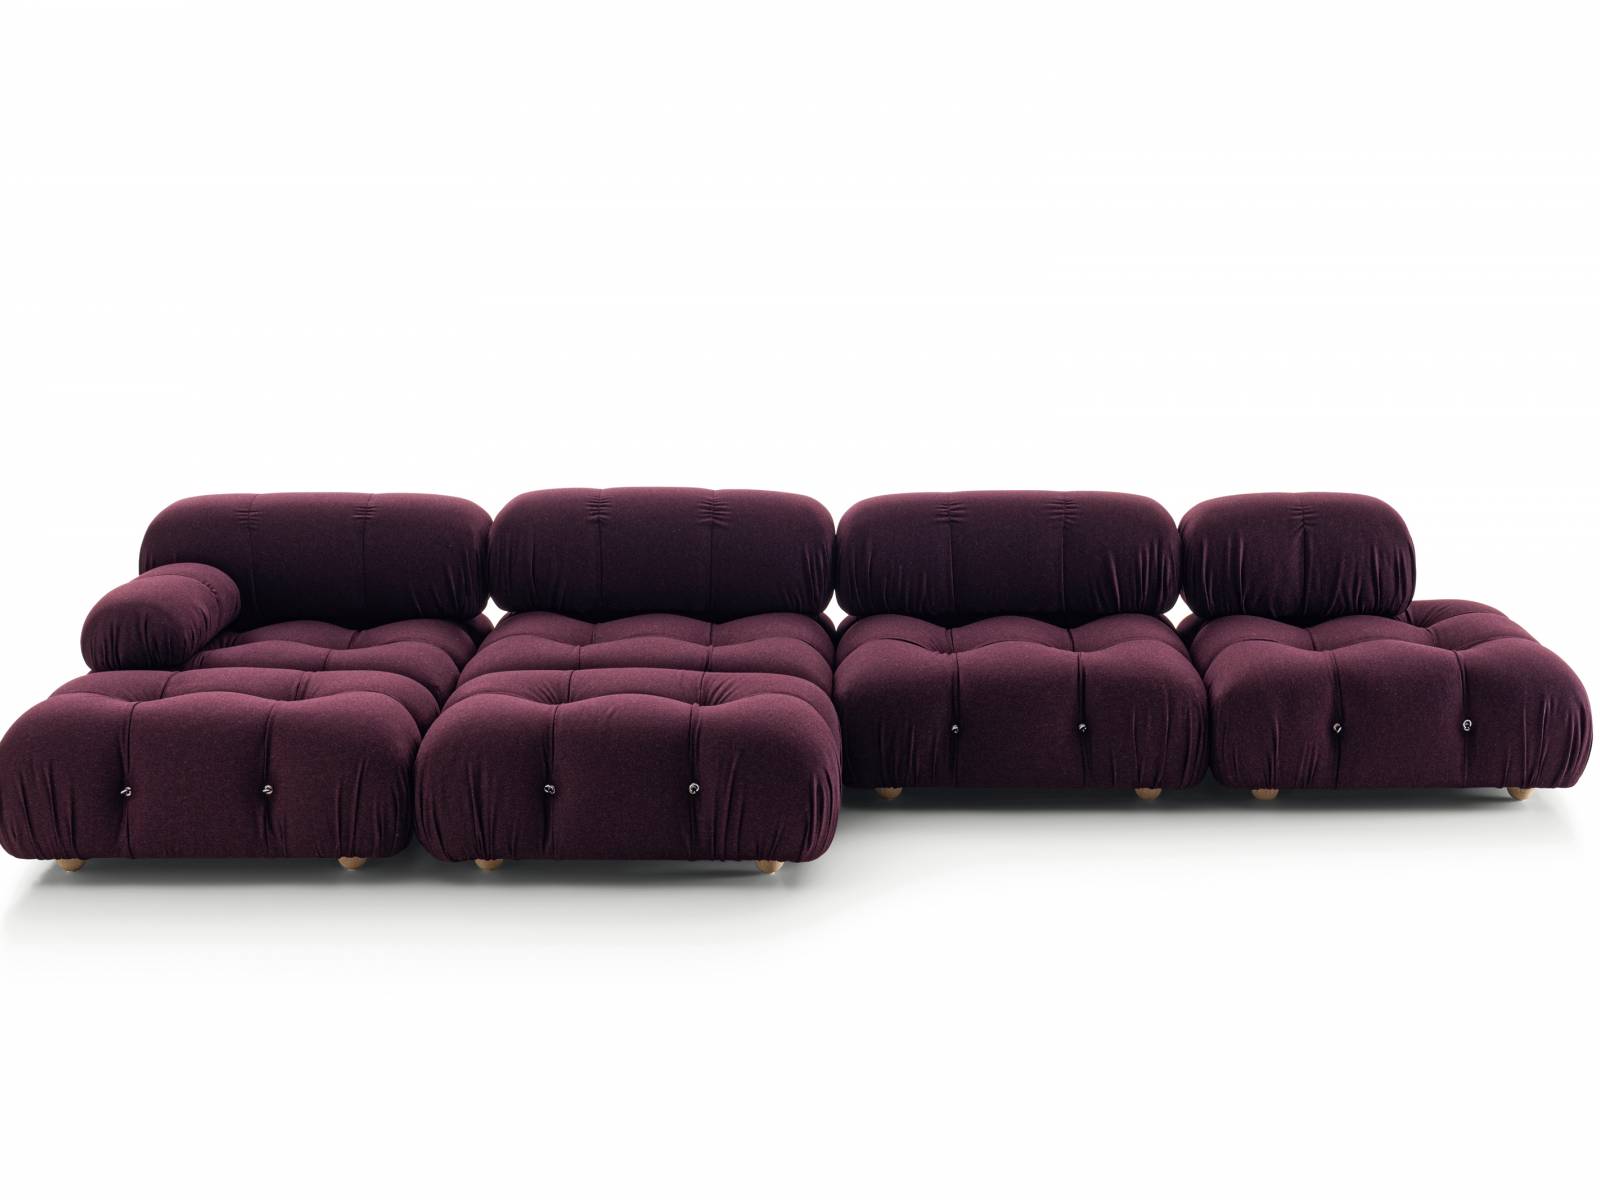 1970 erstmals der Öffentlichkeit präsentiert, hat «Camaleonda» mittlerweile fünf Jahrzehnte Designgeschichte als wahre Ikone durchlaufen. Das modulare Sofa mit seiner aussergewöhnlichen Form wurde von Mario Bellini entworfen und ist heute besonders bei DesignliebhaberInnen, AntiquitätenhändlerInnen und InnenarchitektInnen anzutreffen. B&B Italia.